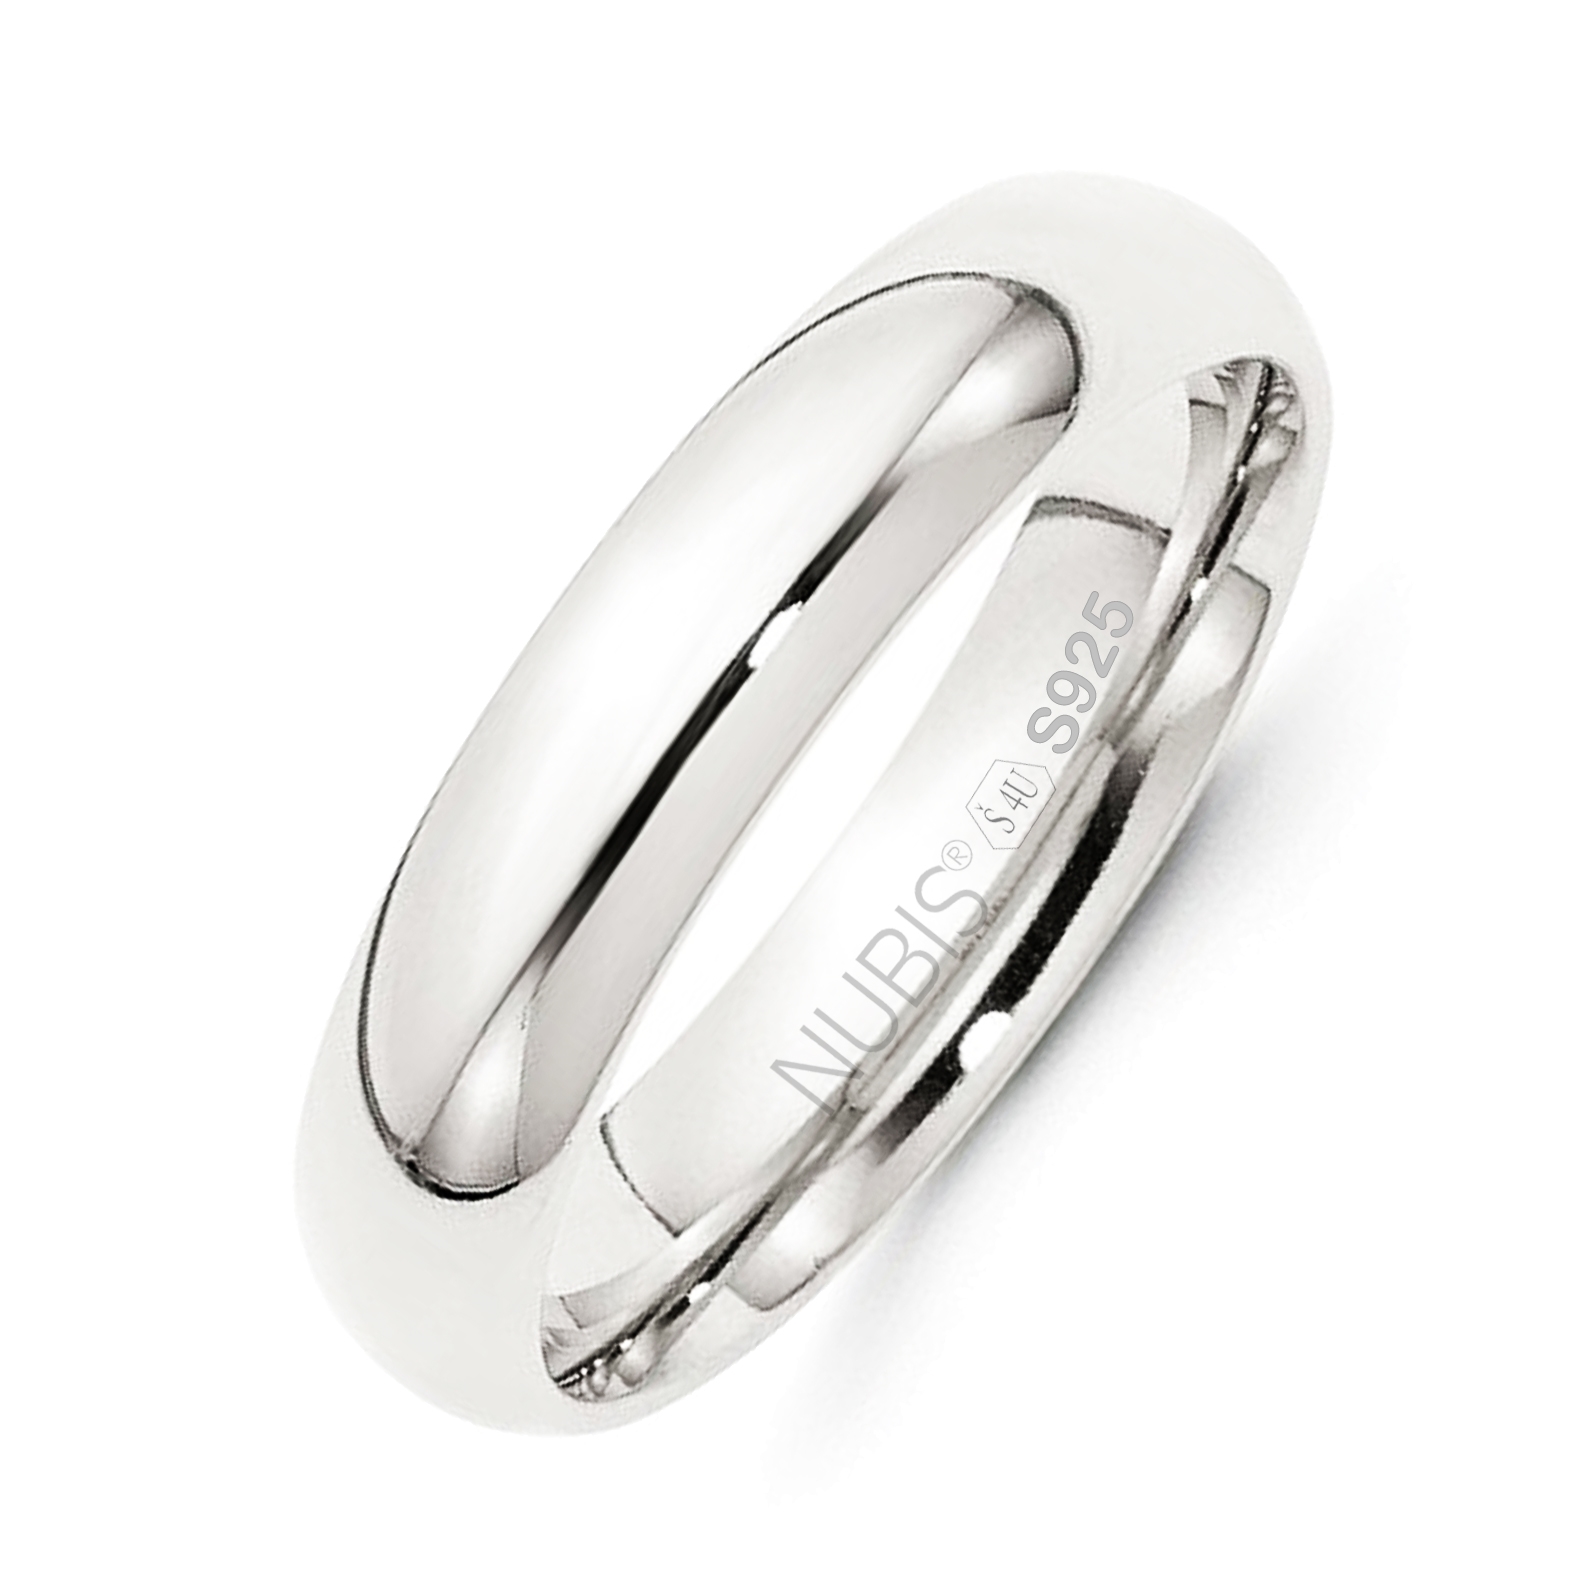 NUBIS® NB101-5 Stříbrný snubní prsten šíře 5 mm - velikost 54 - NB101-5-54